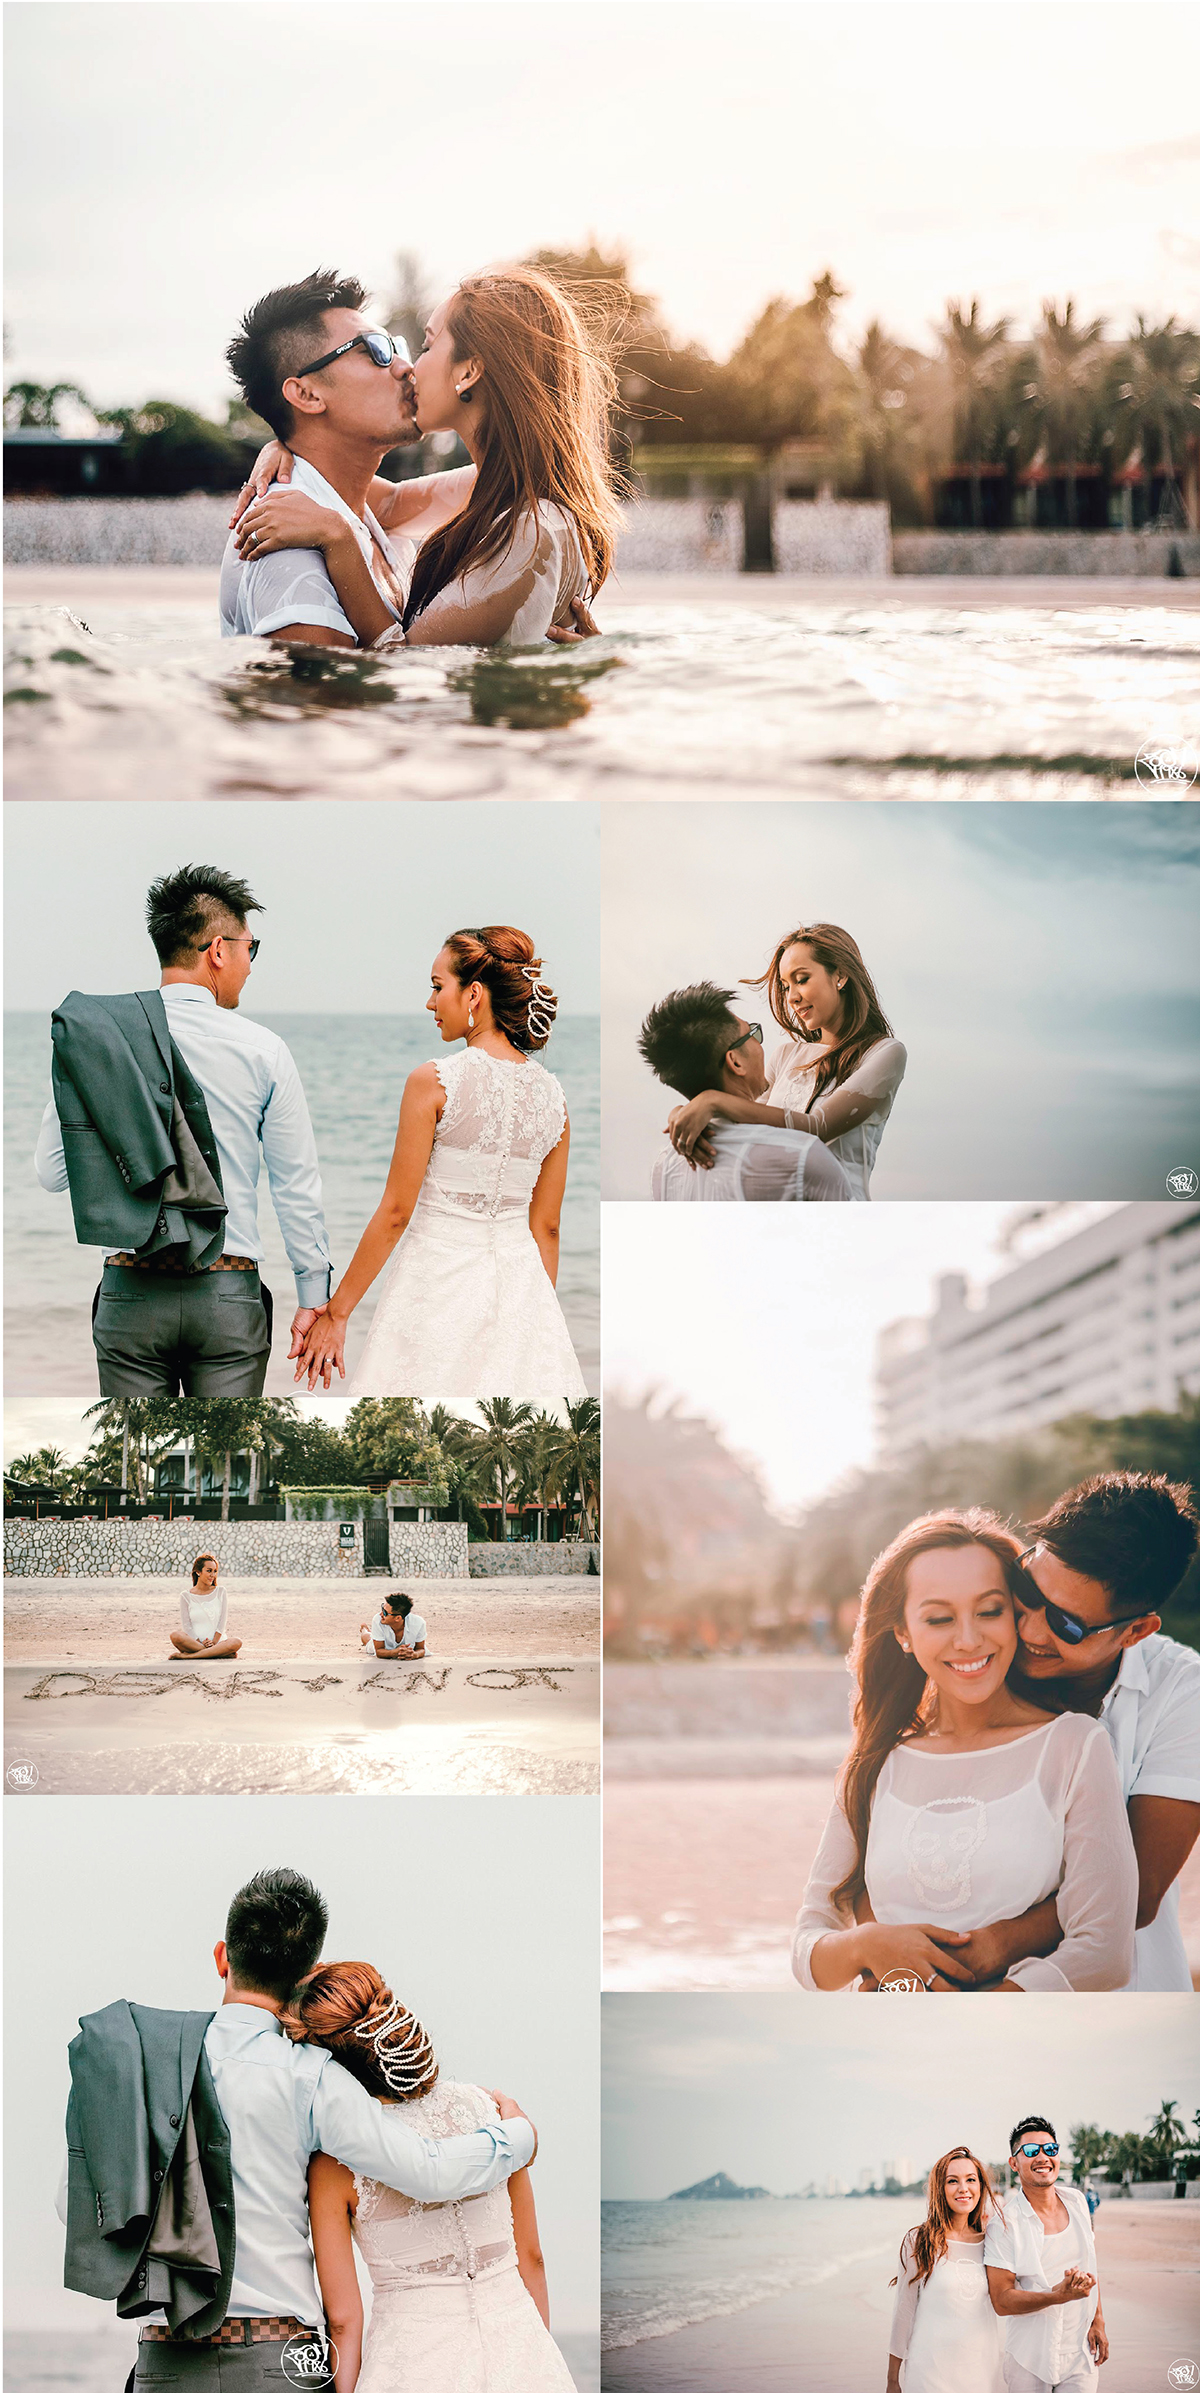 แพ็คเกจถ่ายพรีเวดดิ้ง ริมทะเล , Wedding on The Beach , หาช่างภาพถ่ายรูปแต่งงาน